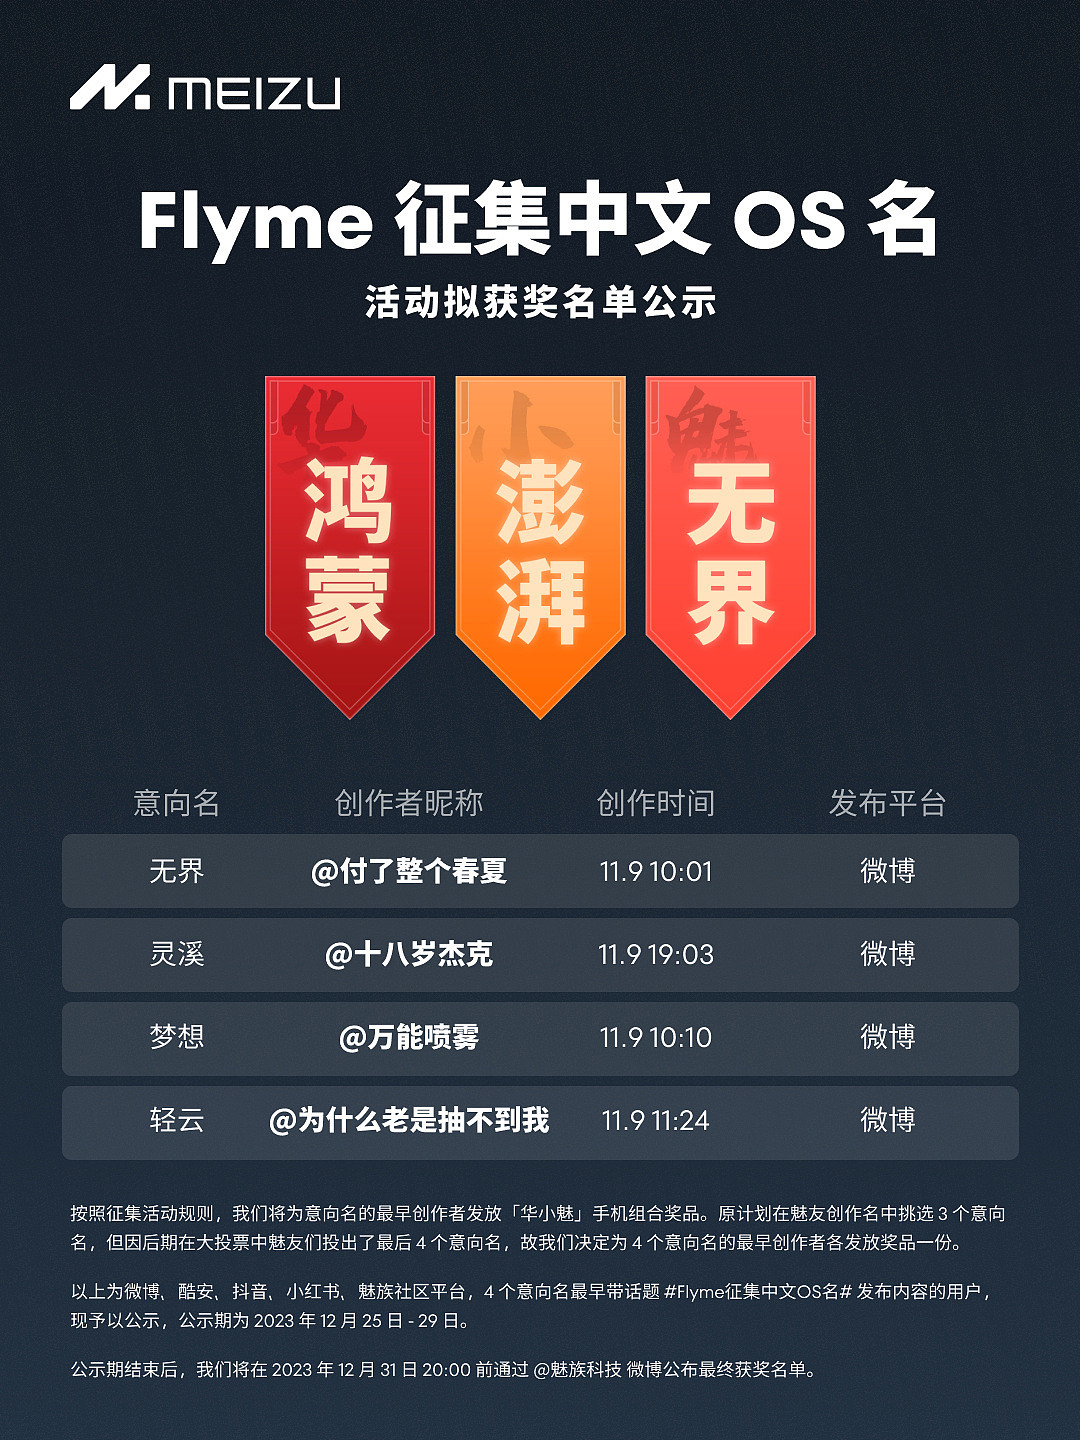 Flyme 征集中文 OS 名拟获奖名单公示，4 人获得华为、小米、魅族手机组合 - 1